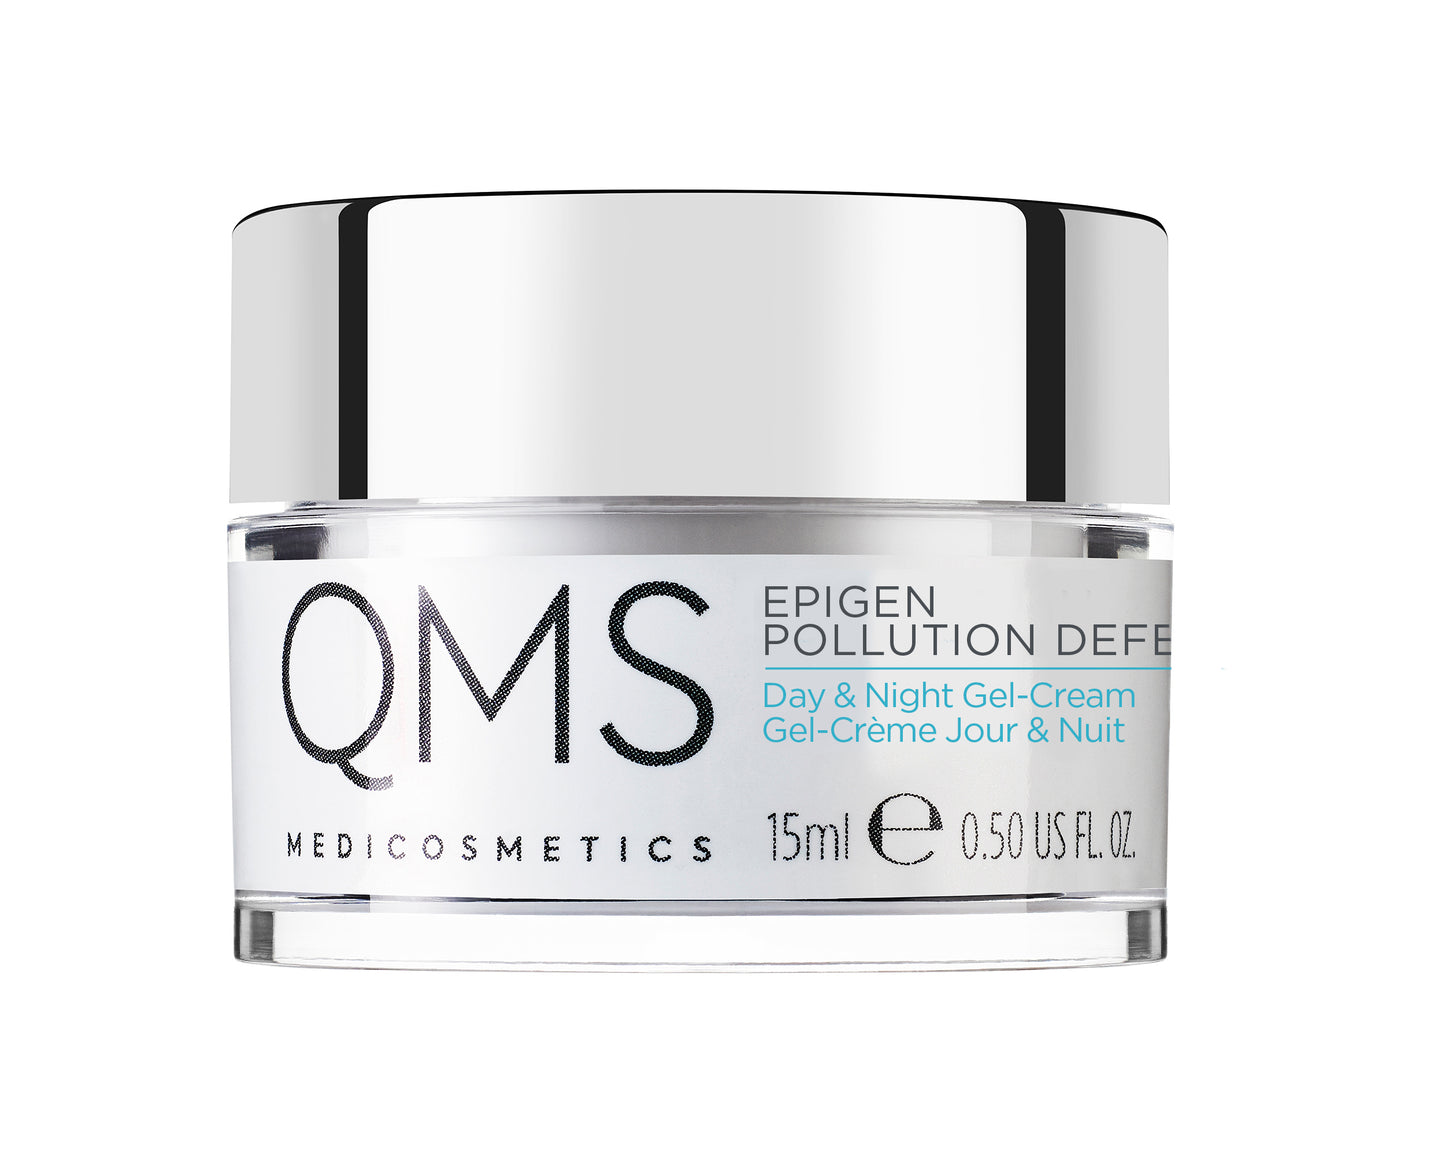 QMS Epigen Pollution Defense Day & Night Gel-Cream 15 ml (discover size)